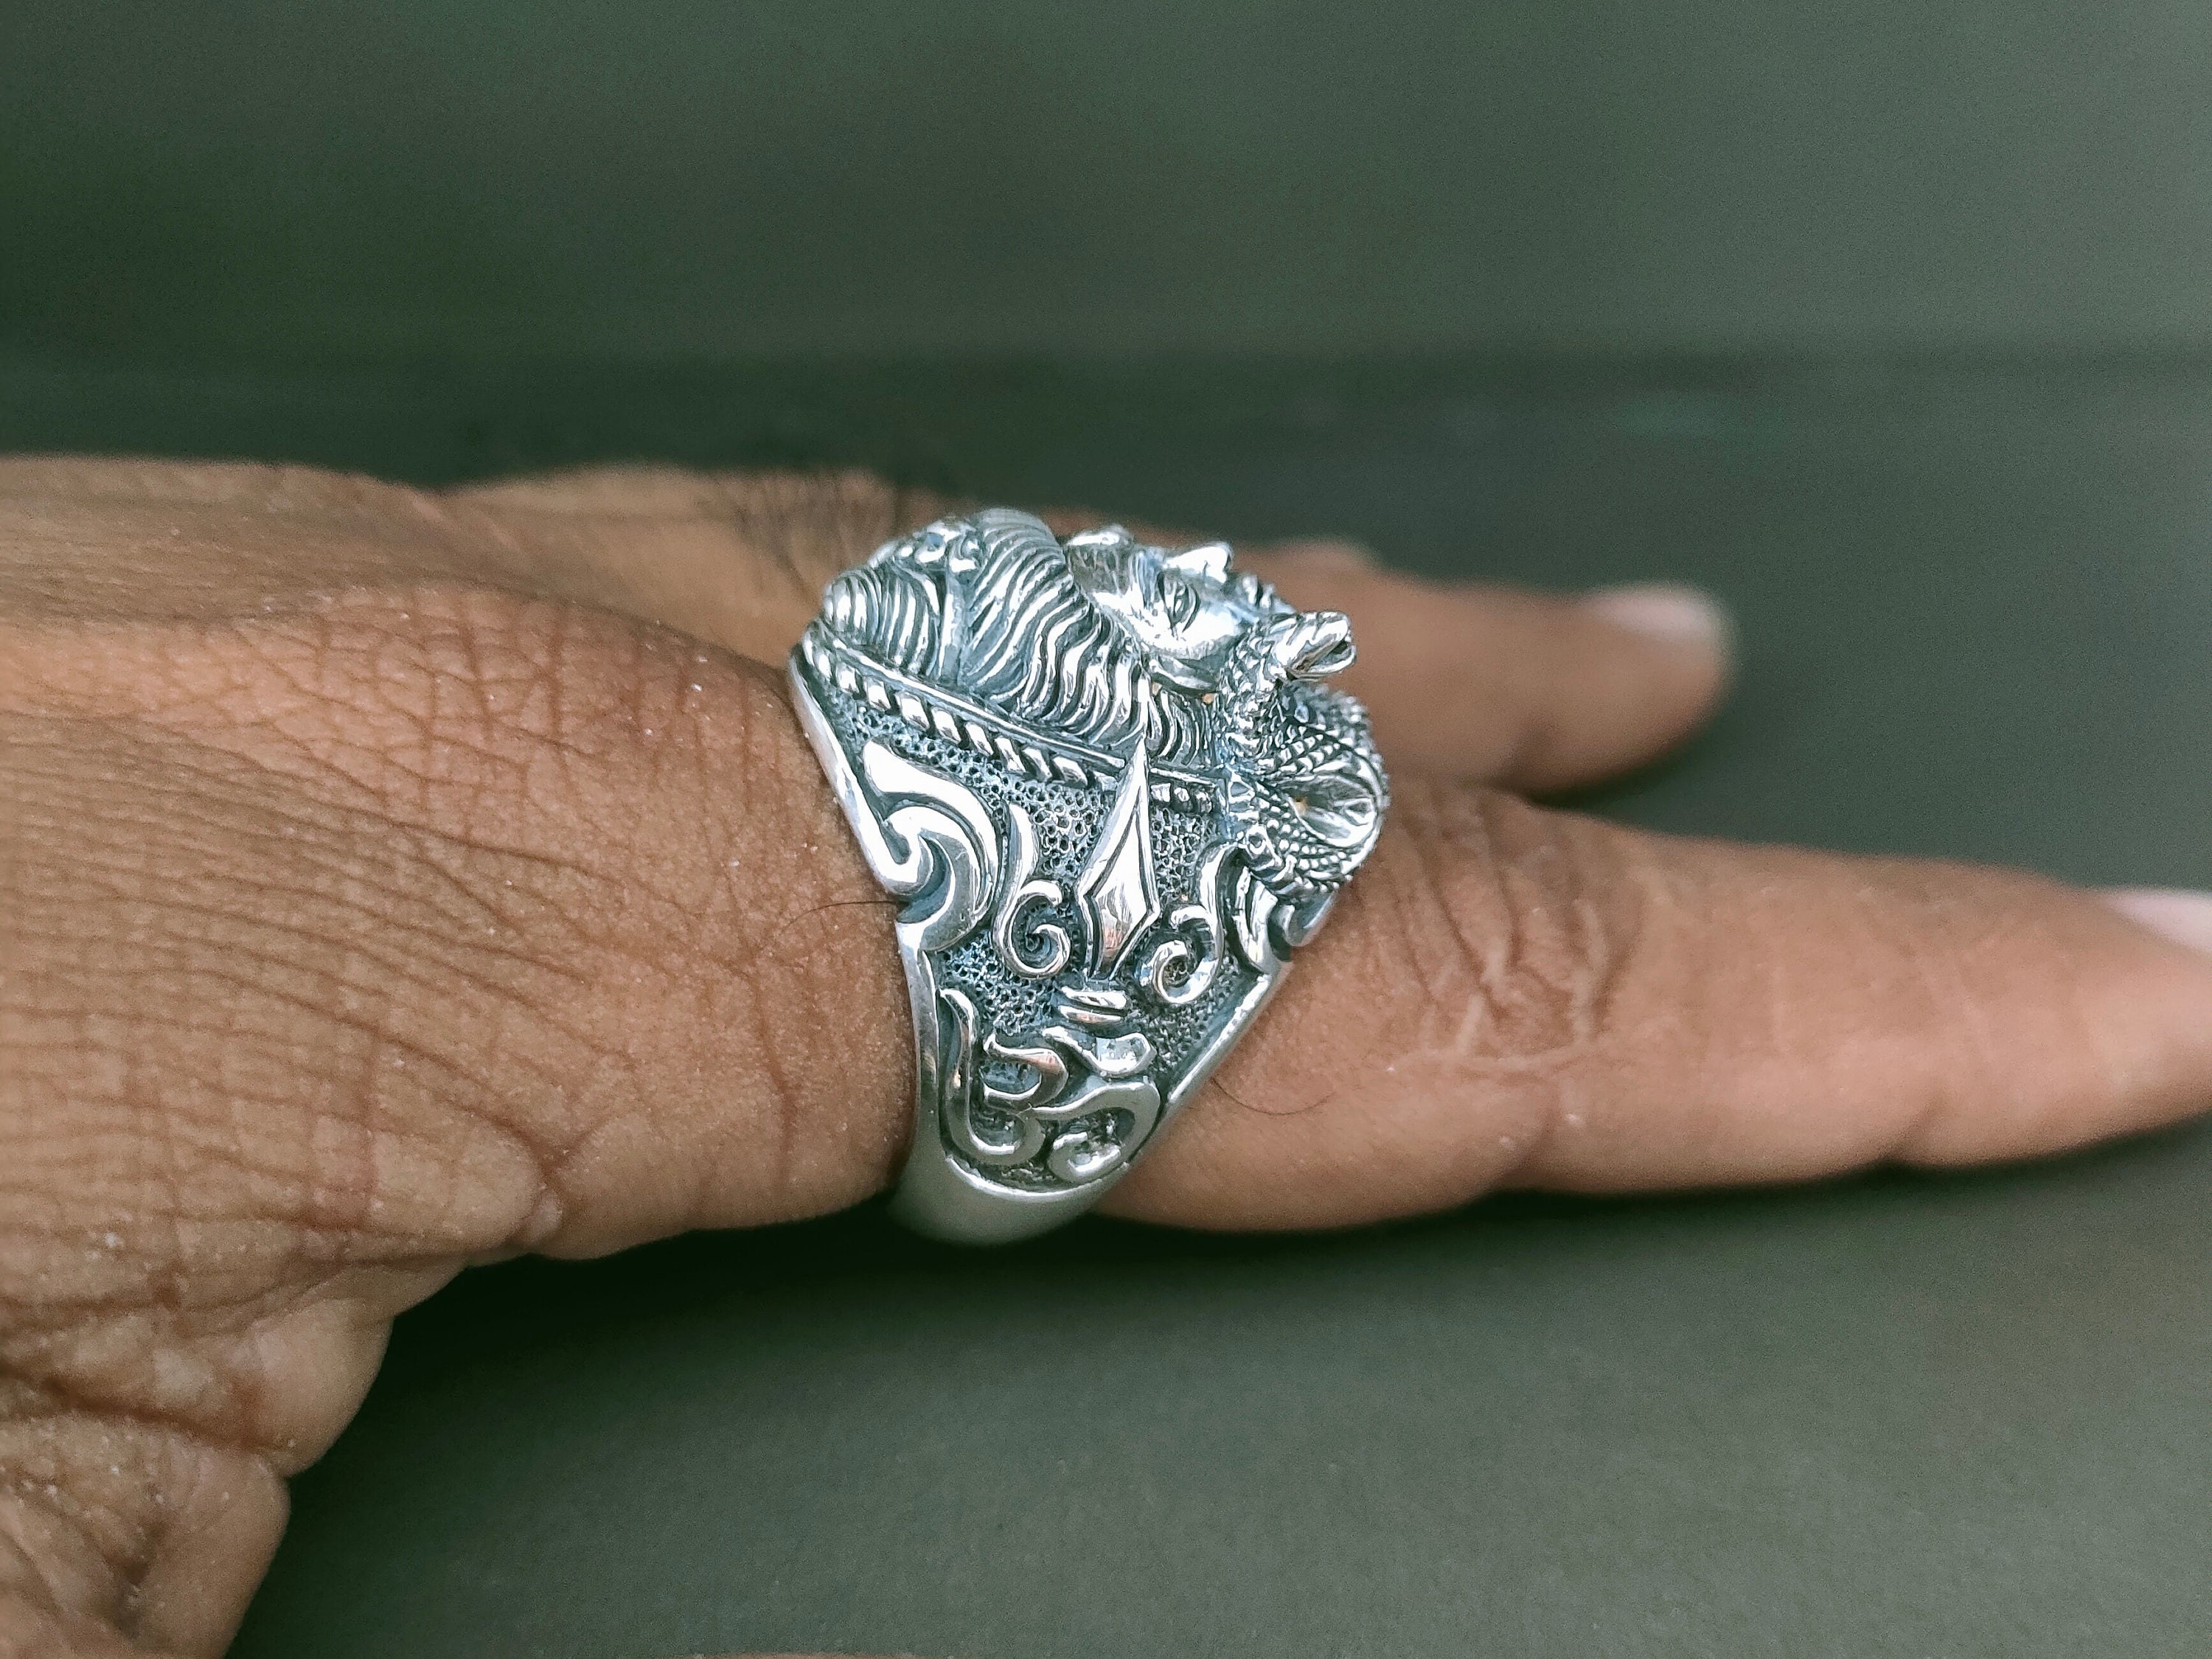 गोमती चक्र की पूजा विधी और अंघूटी पहनने के फायदे | Benefits of Wearing  Gomti Chakra Ring - YouTube